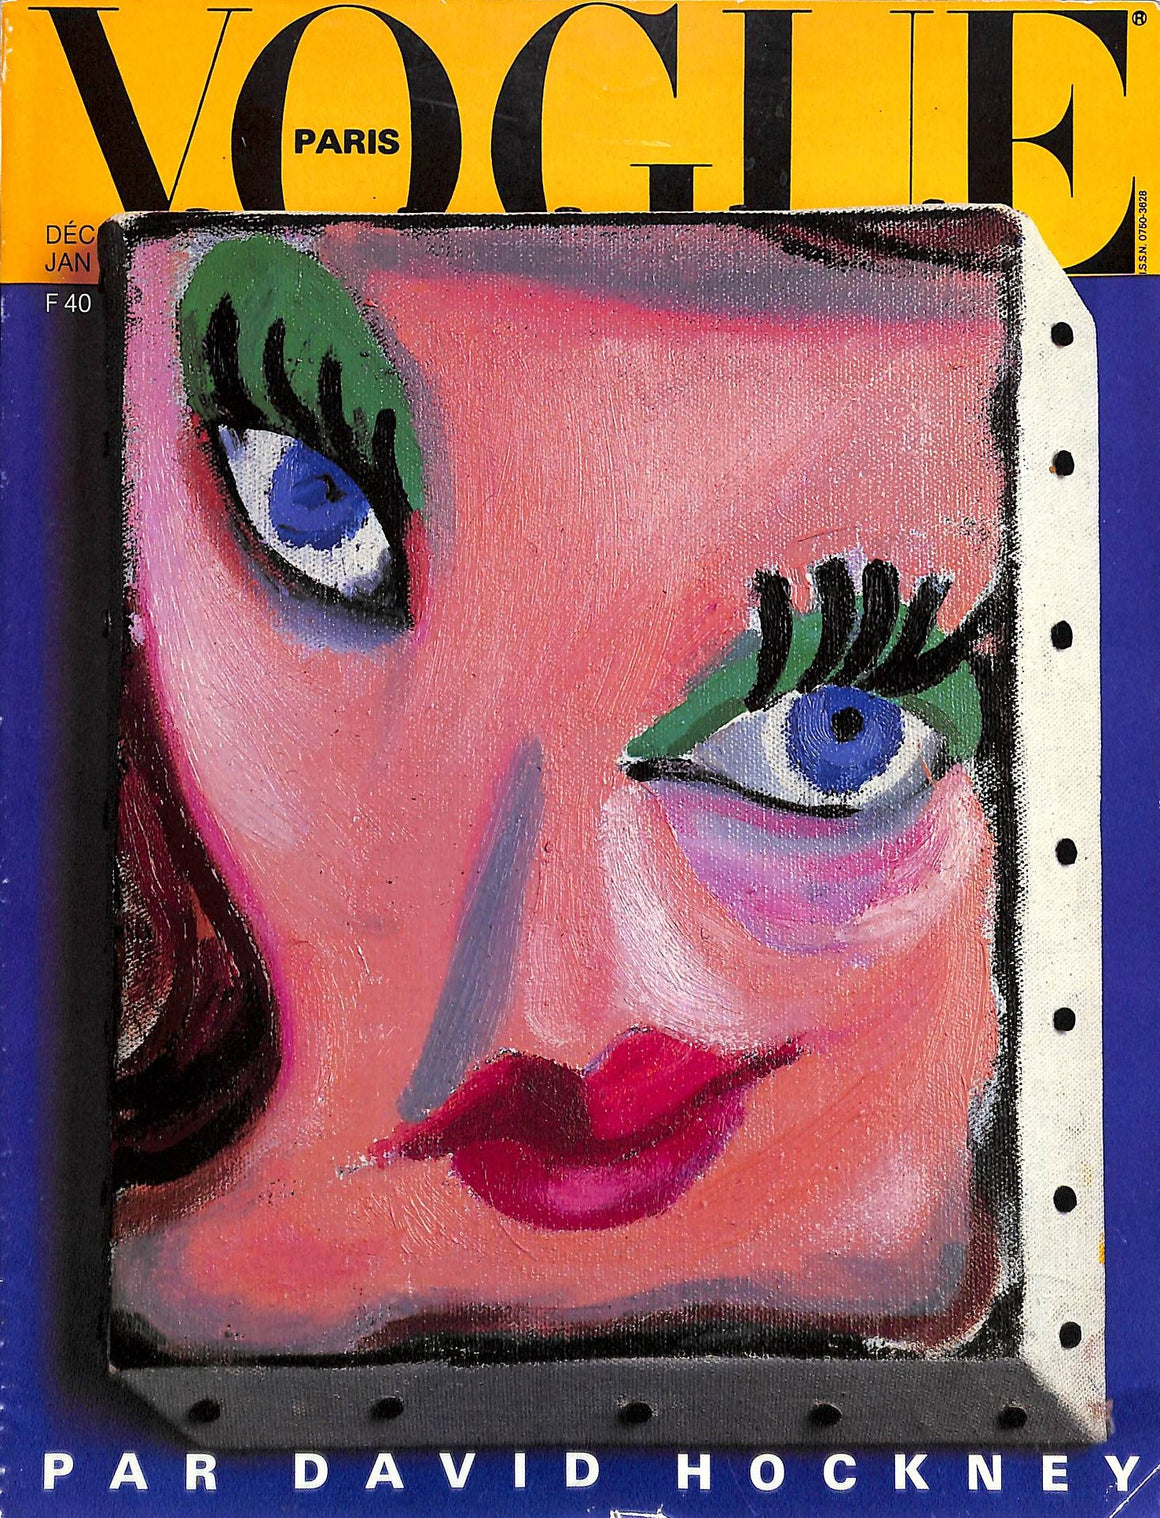 "Paris Vogue No. 662" Decembre 1985/ Janvier 1986 [David Hockney Special Issue] (SOLD)